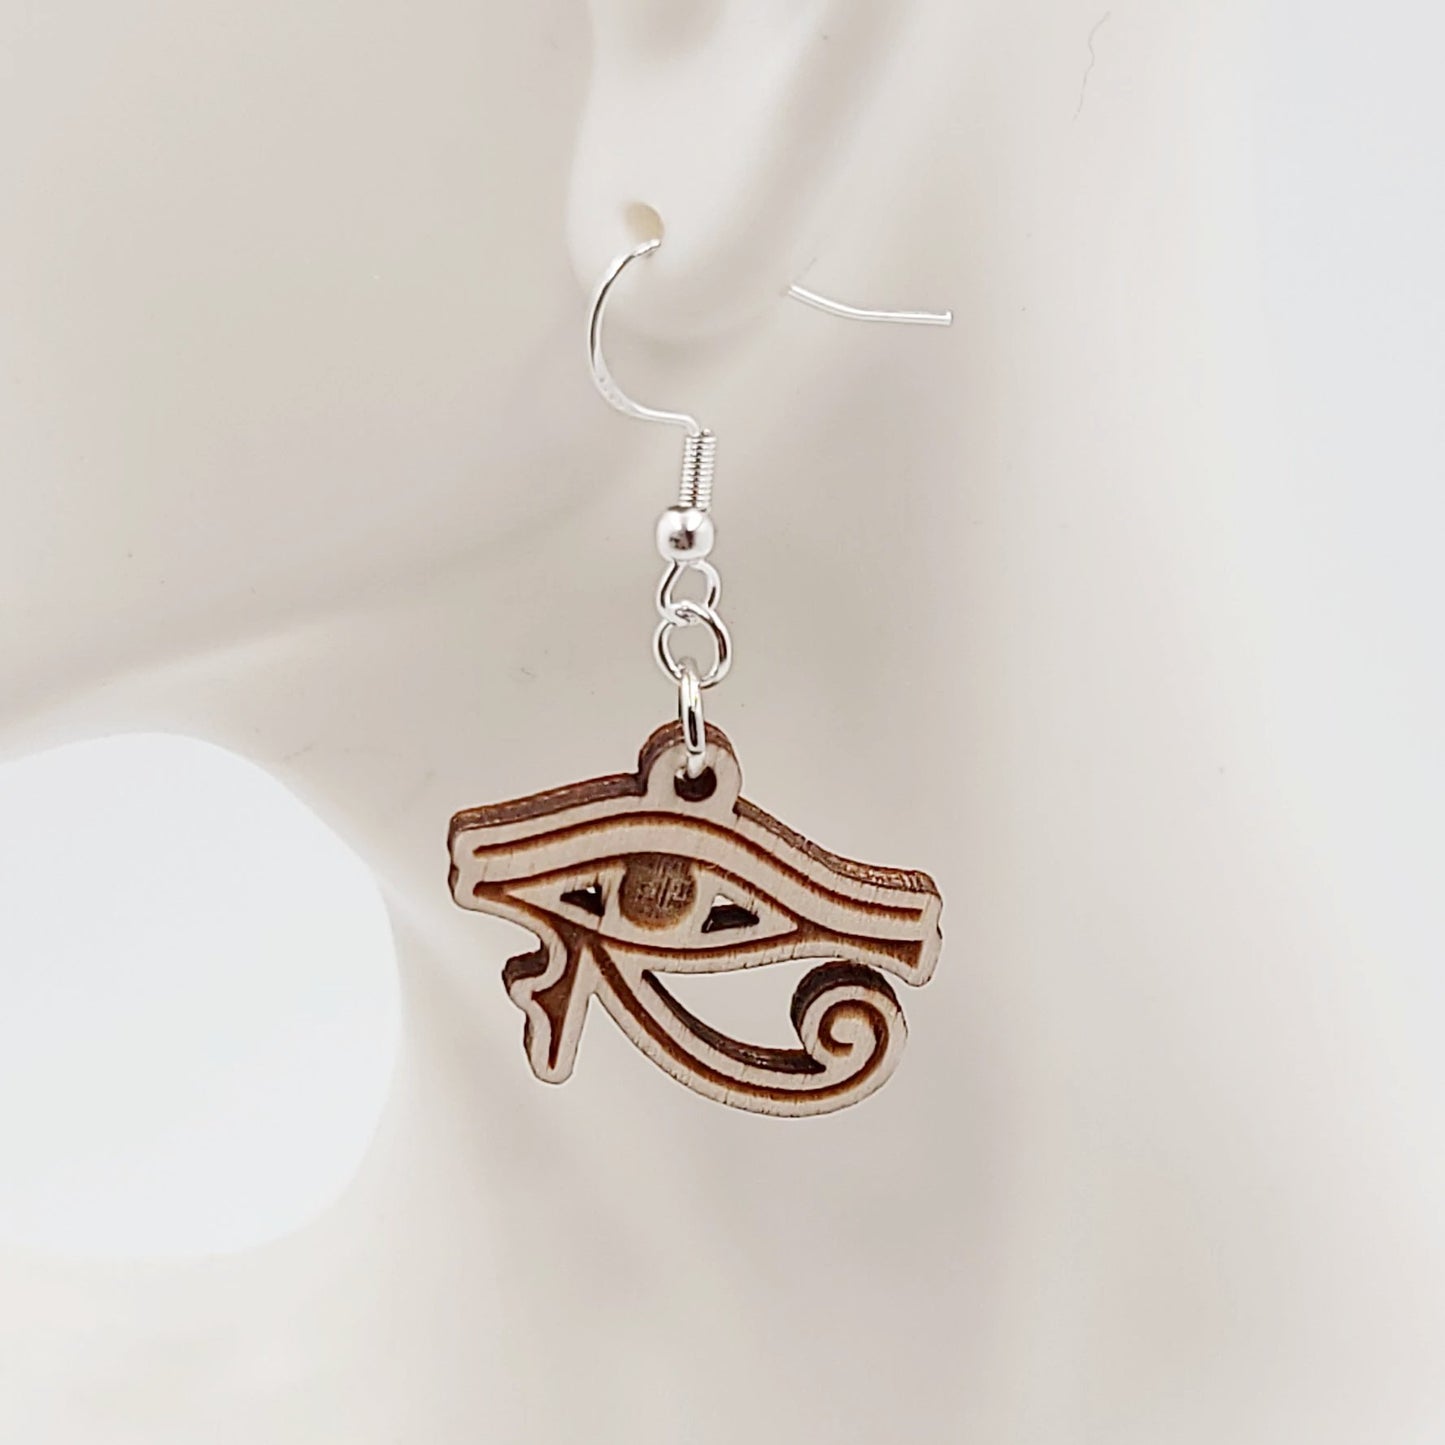 Eye of Horus Earrings Sterling Silver Dangle - Elevated Metaphysical